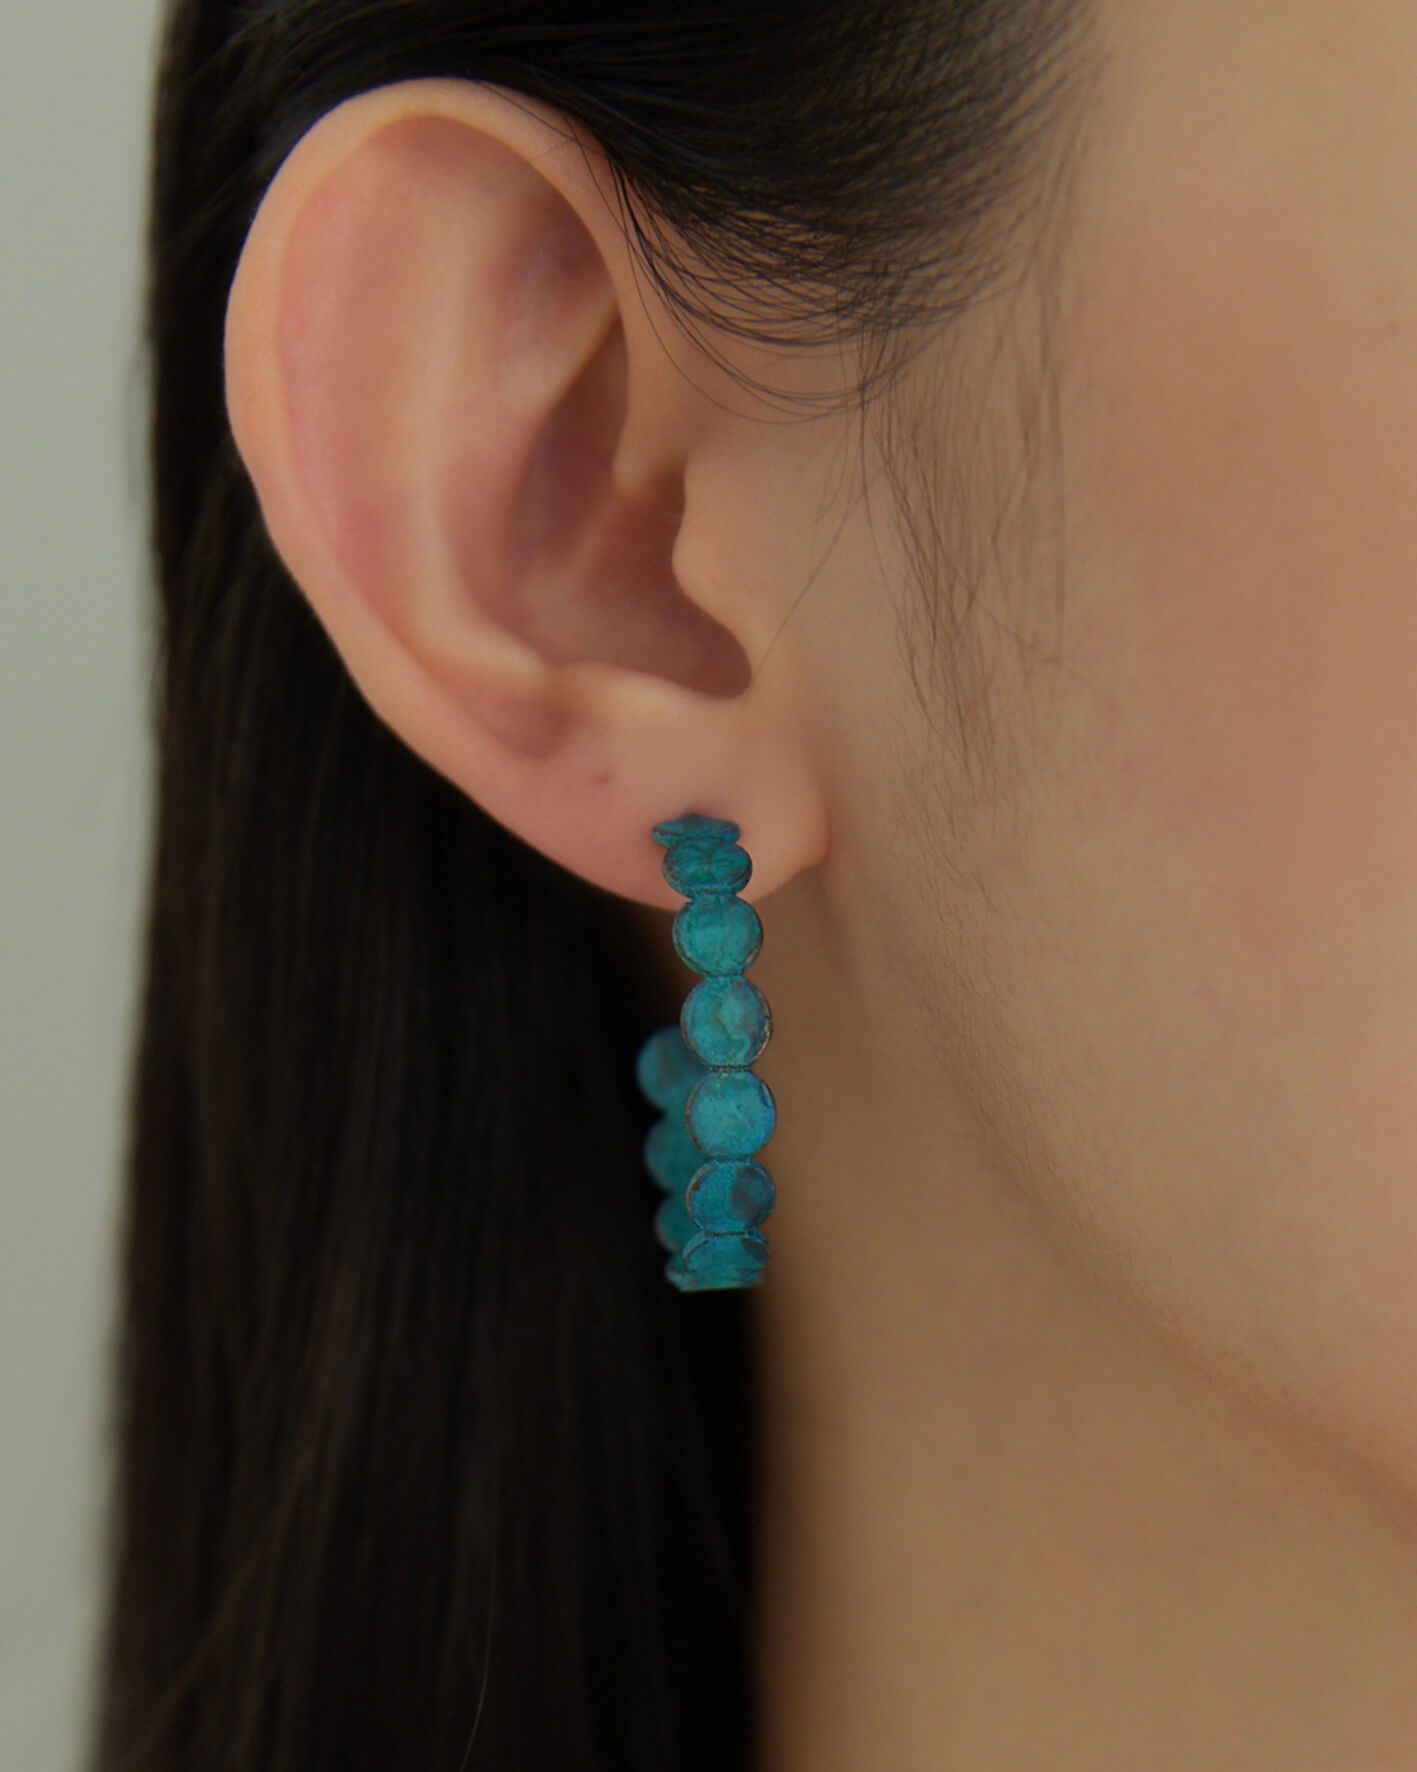 Eco安珂,韓國飾品,韓國耳環,耳針式耳環,C圈耳環,復古耳環